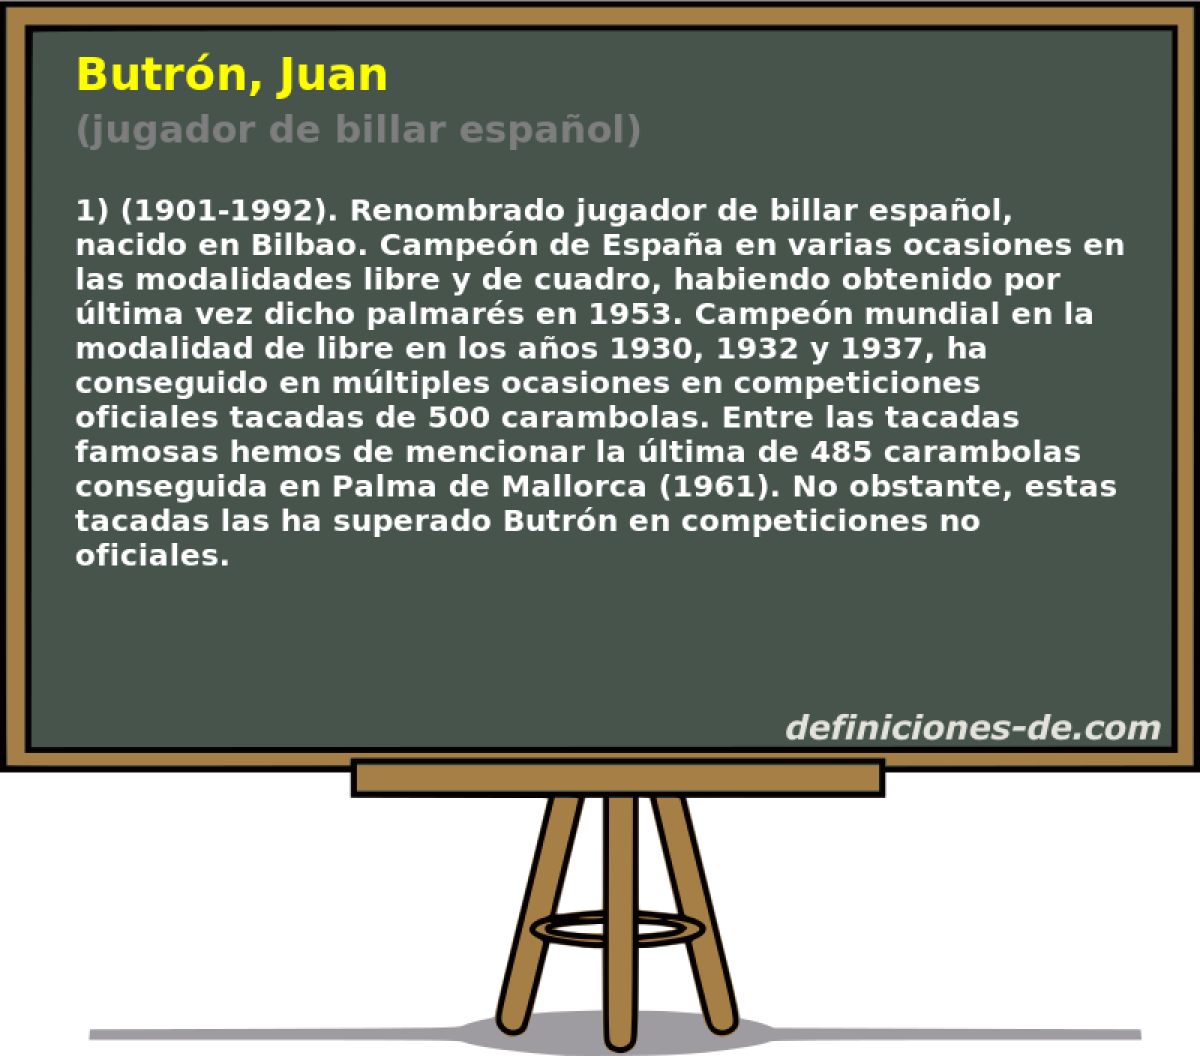 Butrn, Juan (jugador de billar espaol)